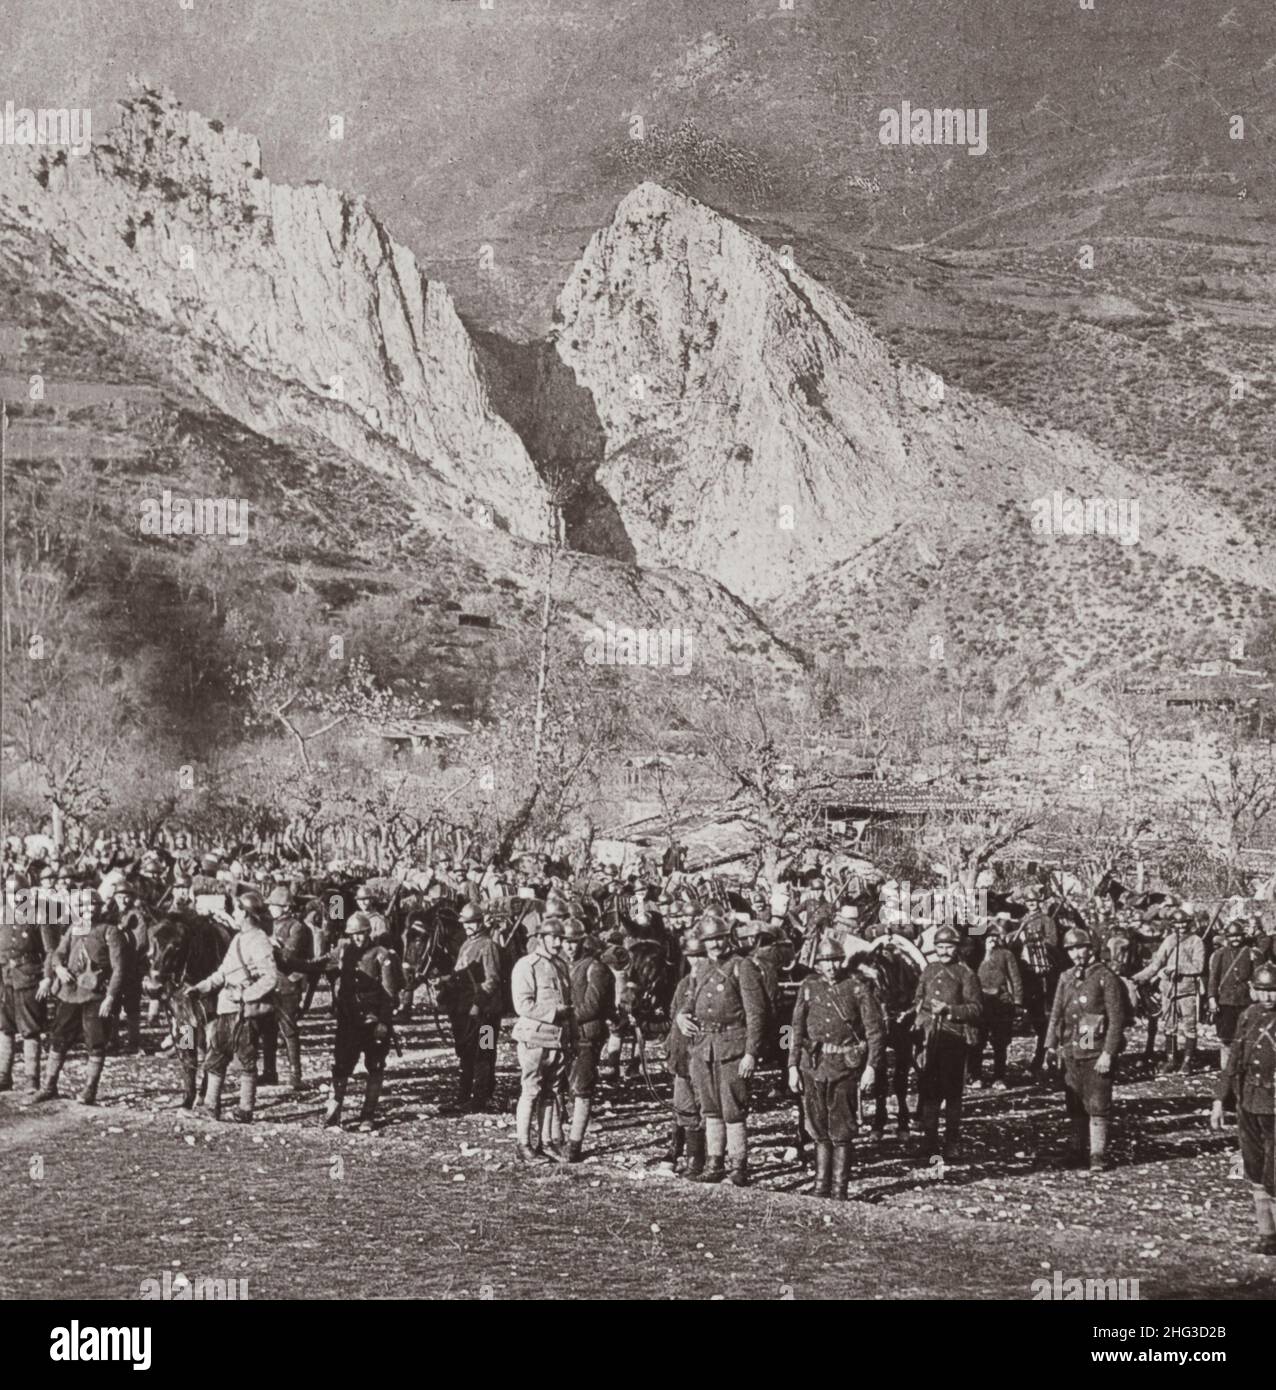 Vintage-Foto des Ersten Weltkriegs 1914-1918. Serbische Reserven in den Balkangebirgen warten auf den Befehl zum Vorrücken. Balkanhalbinsel Stockfoto